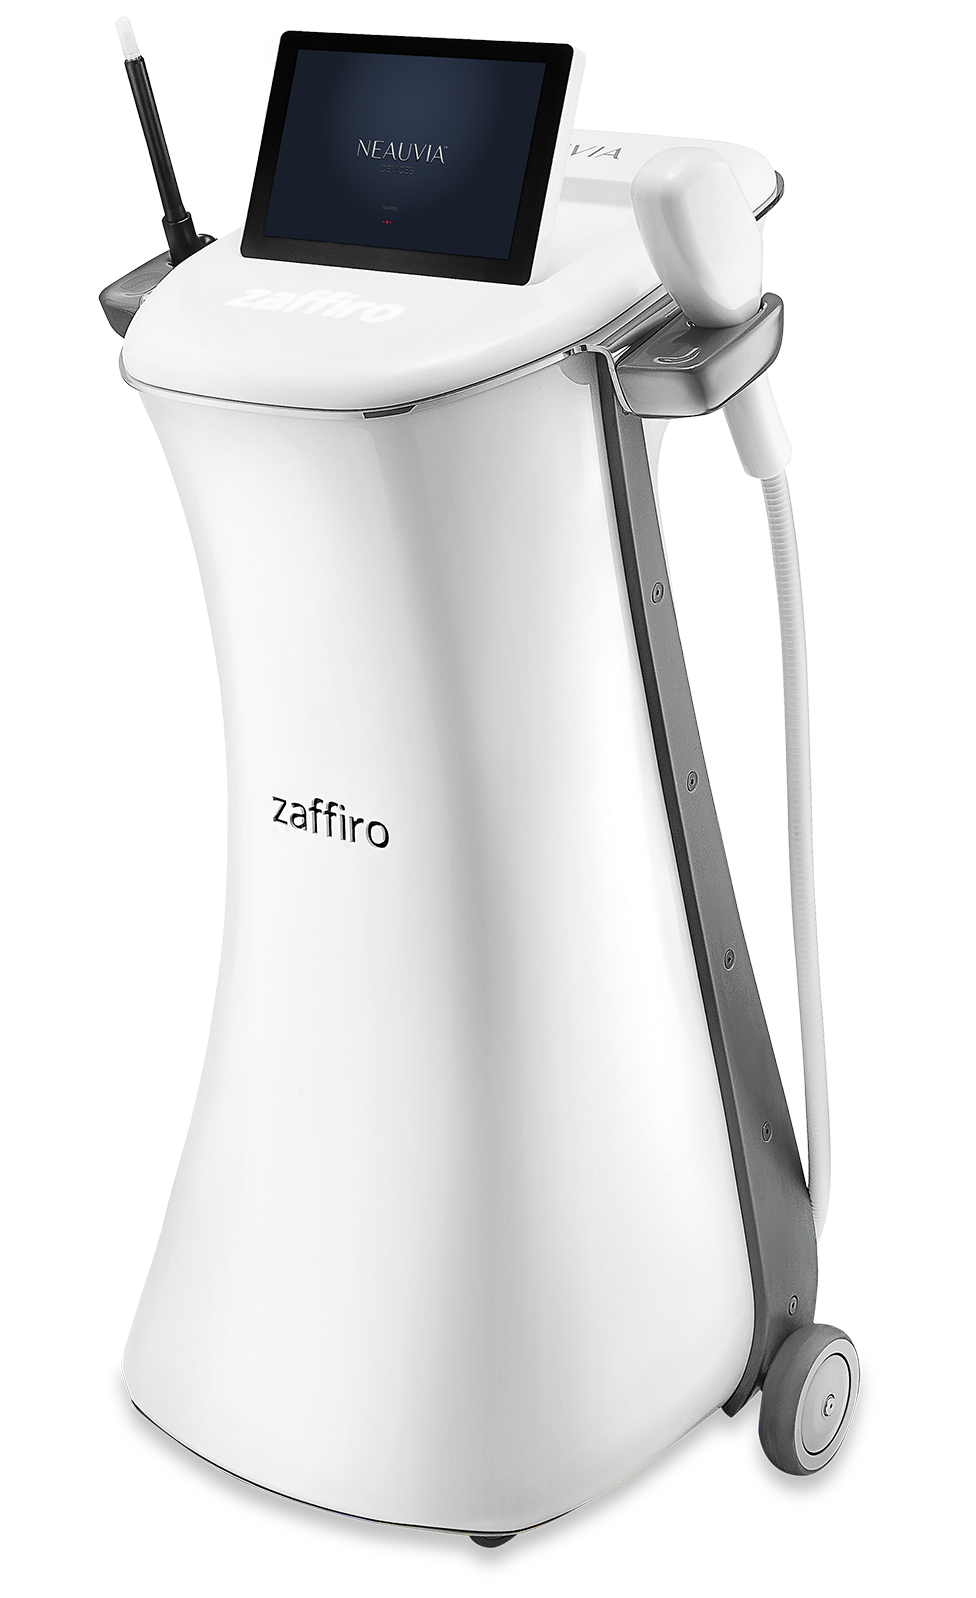 ZAFFIRO es un producto sanitario innovador que combina la hidroexfoliación y el termo-lifting de infrarrojos para iluminar y reafirmar la piel